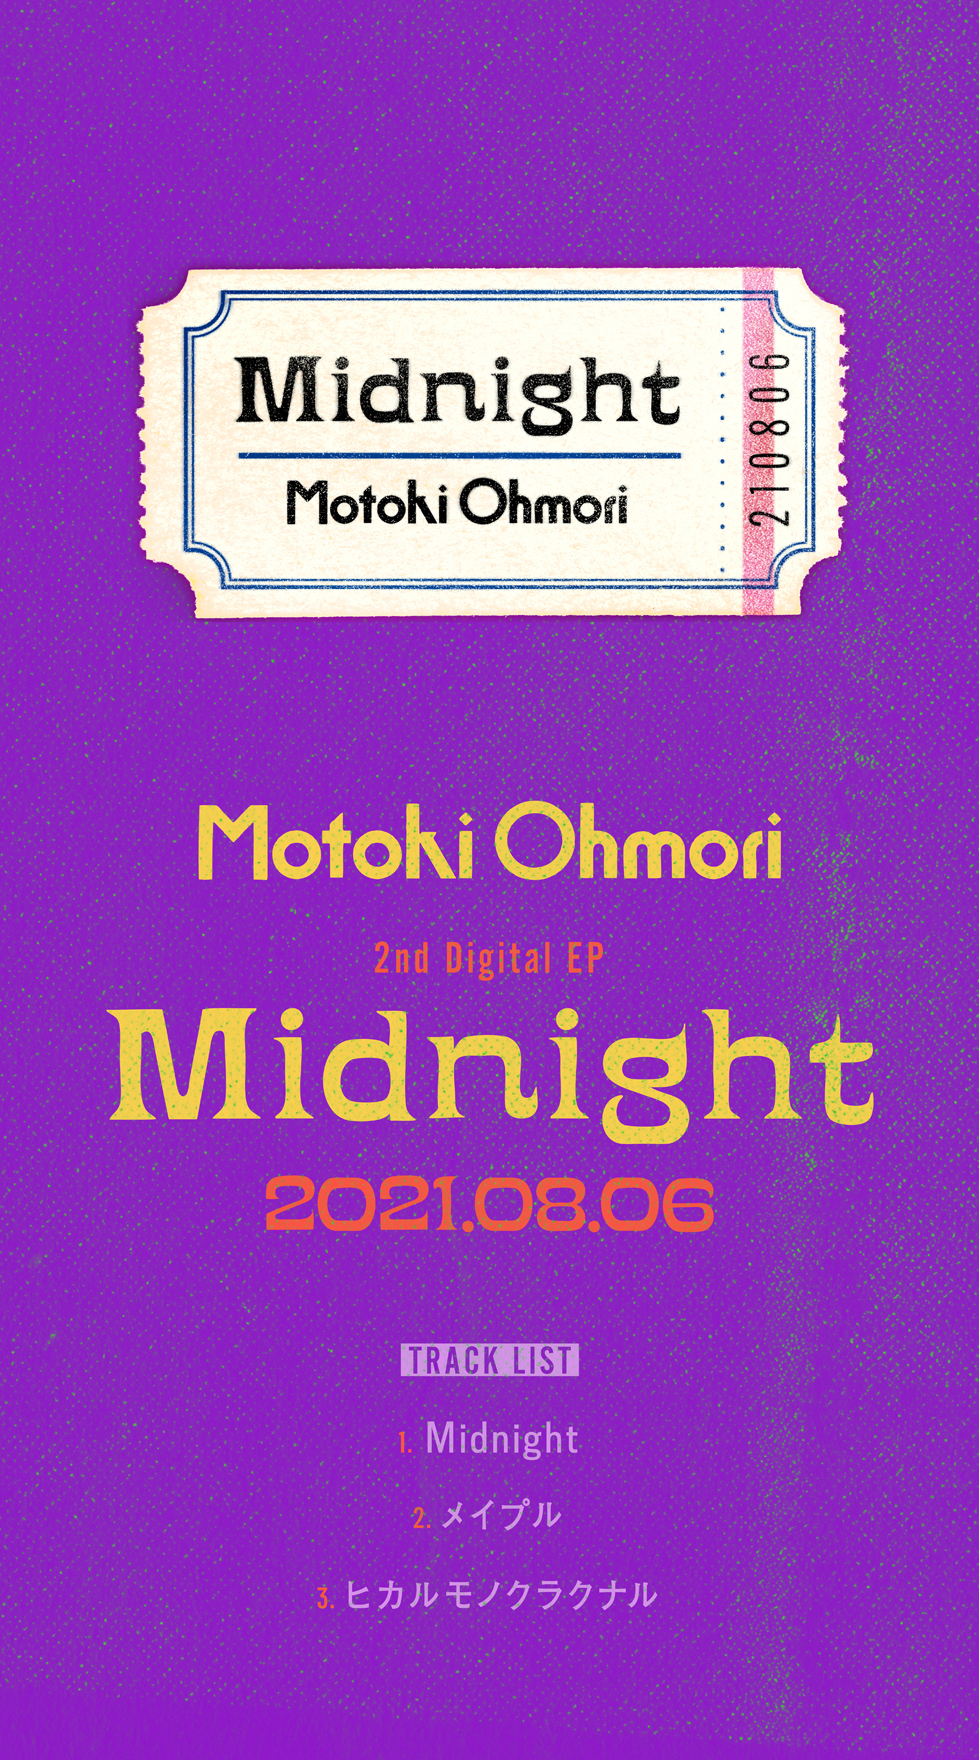 大森元貴、2ndデジタルEP『Midnight』のコンセプトフォト#3を公開 - 画像一覧（1/2）